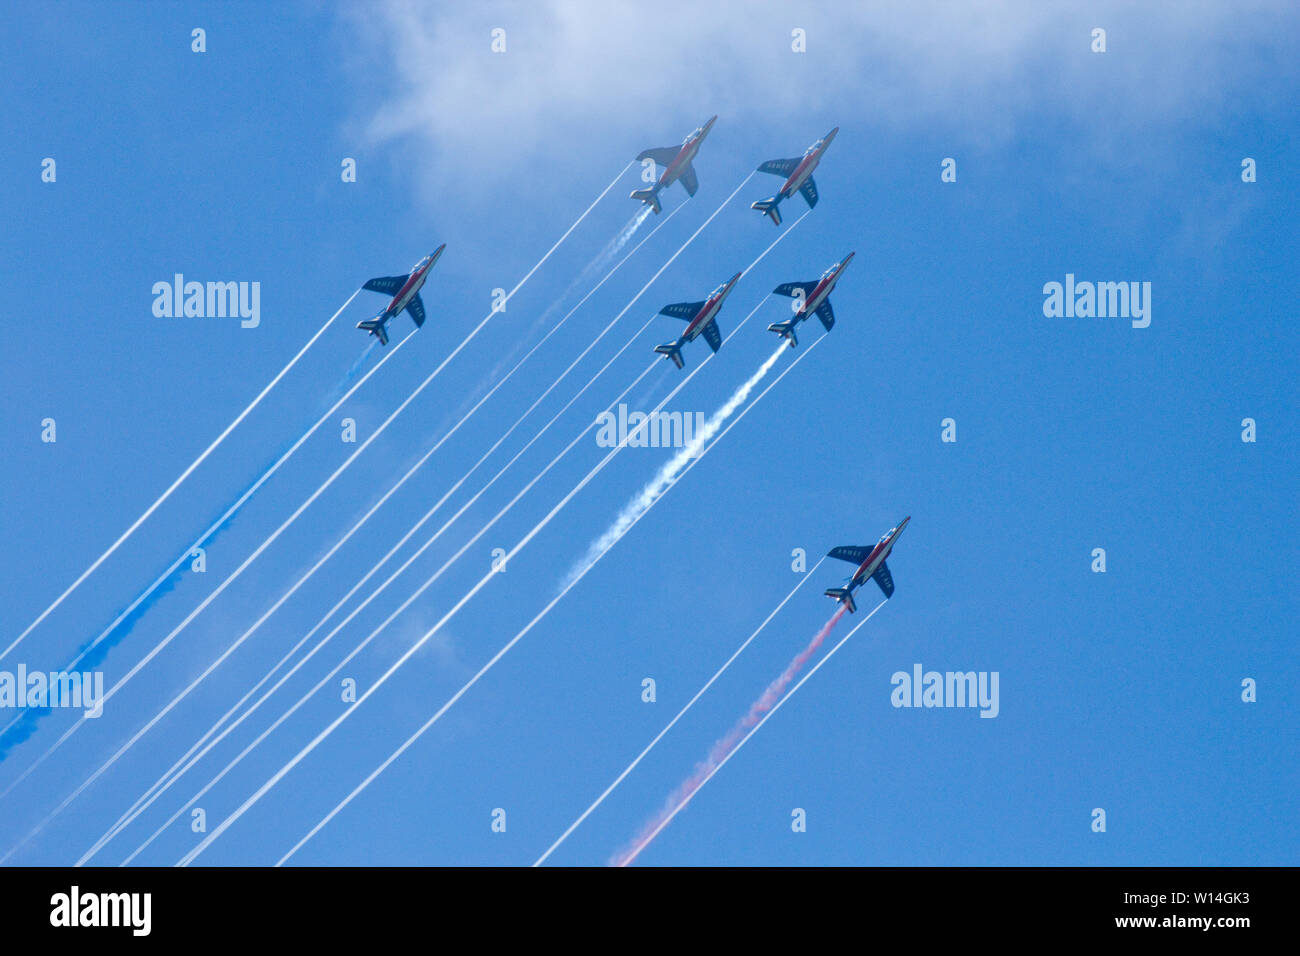 Kunstflugvorführung der 'Patrouille de France' : 6 Alpha-Jets am blauen Himmel mit Turbulenz-Streifen hinter den Tragflächen Stock Photo